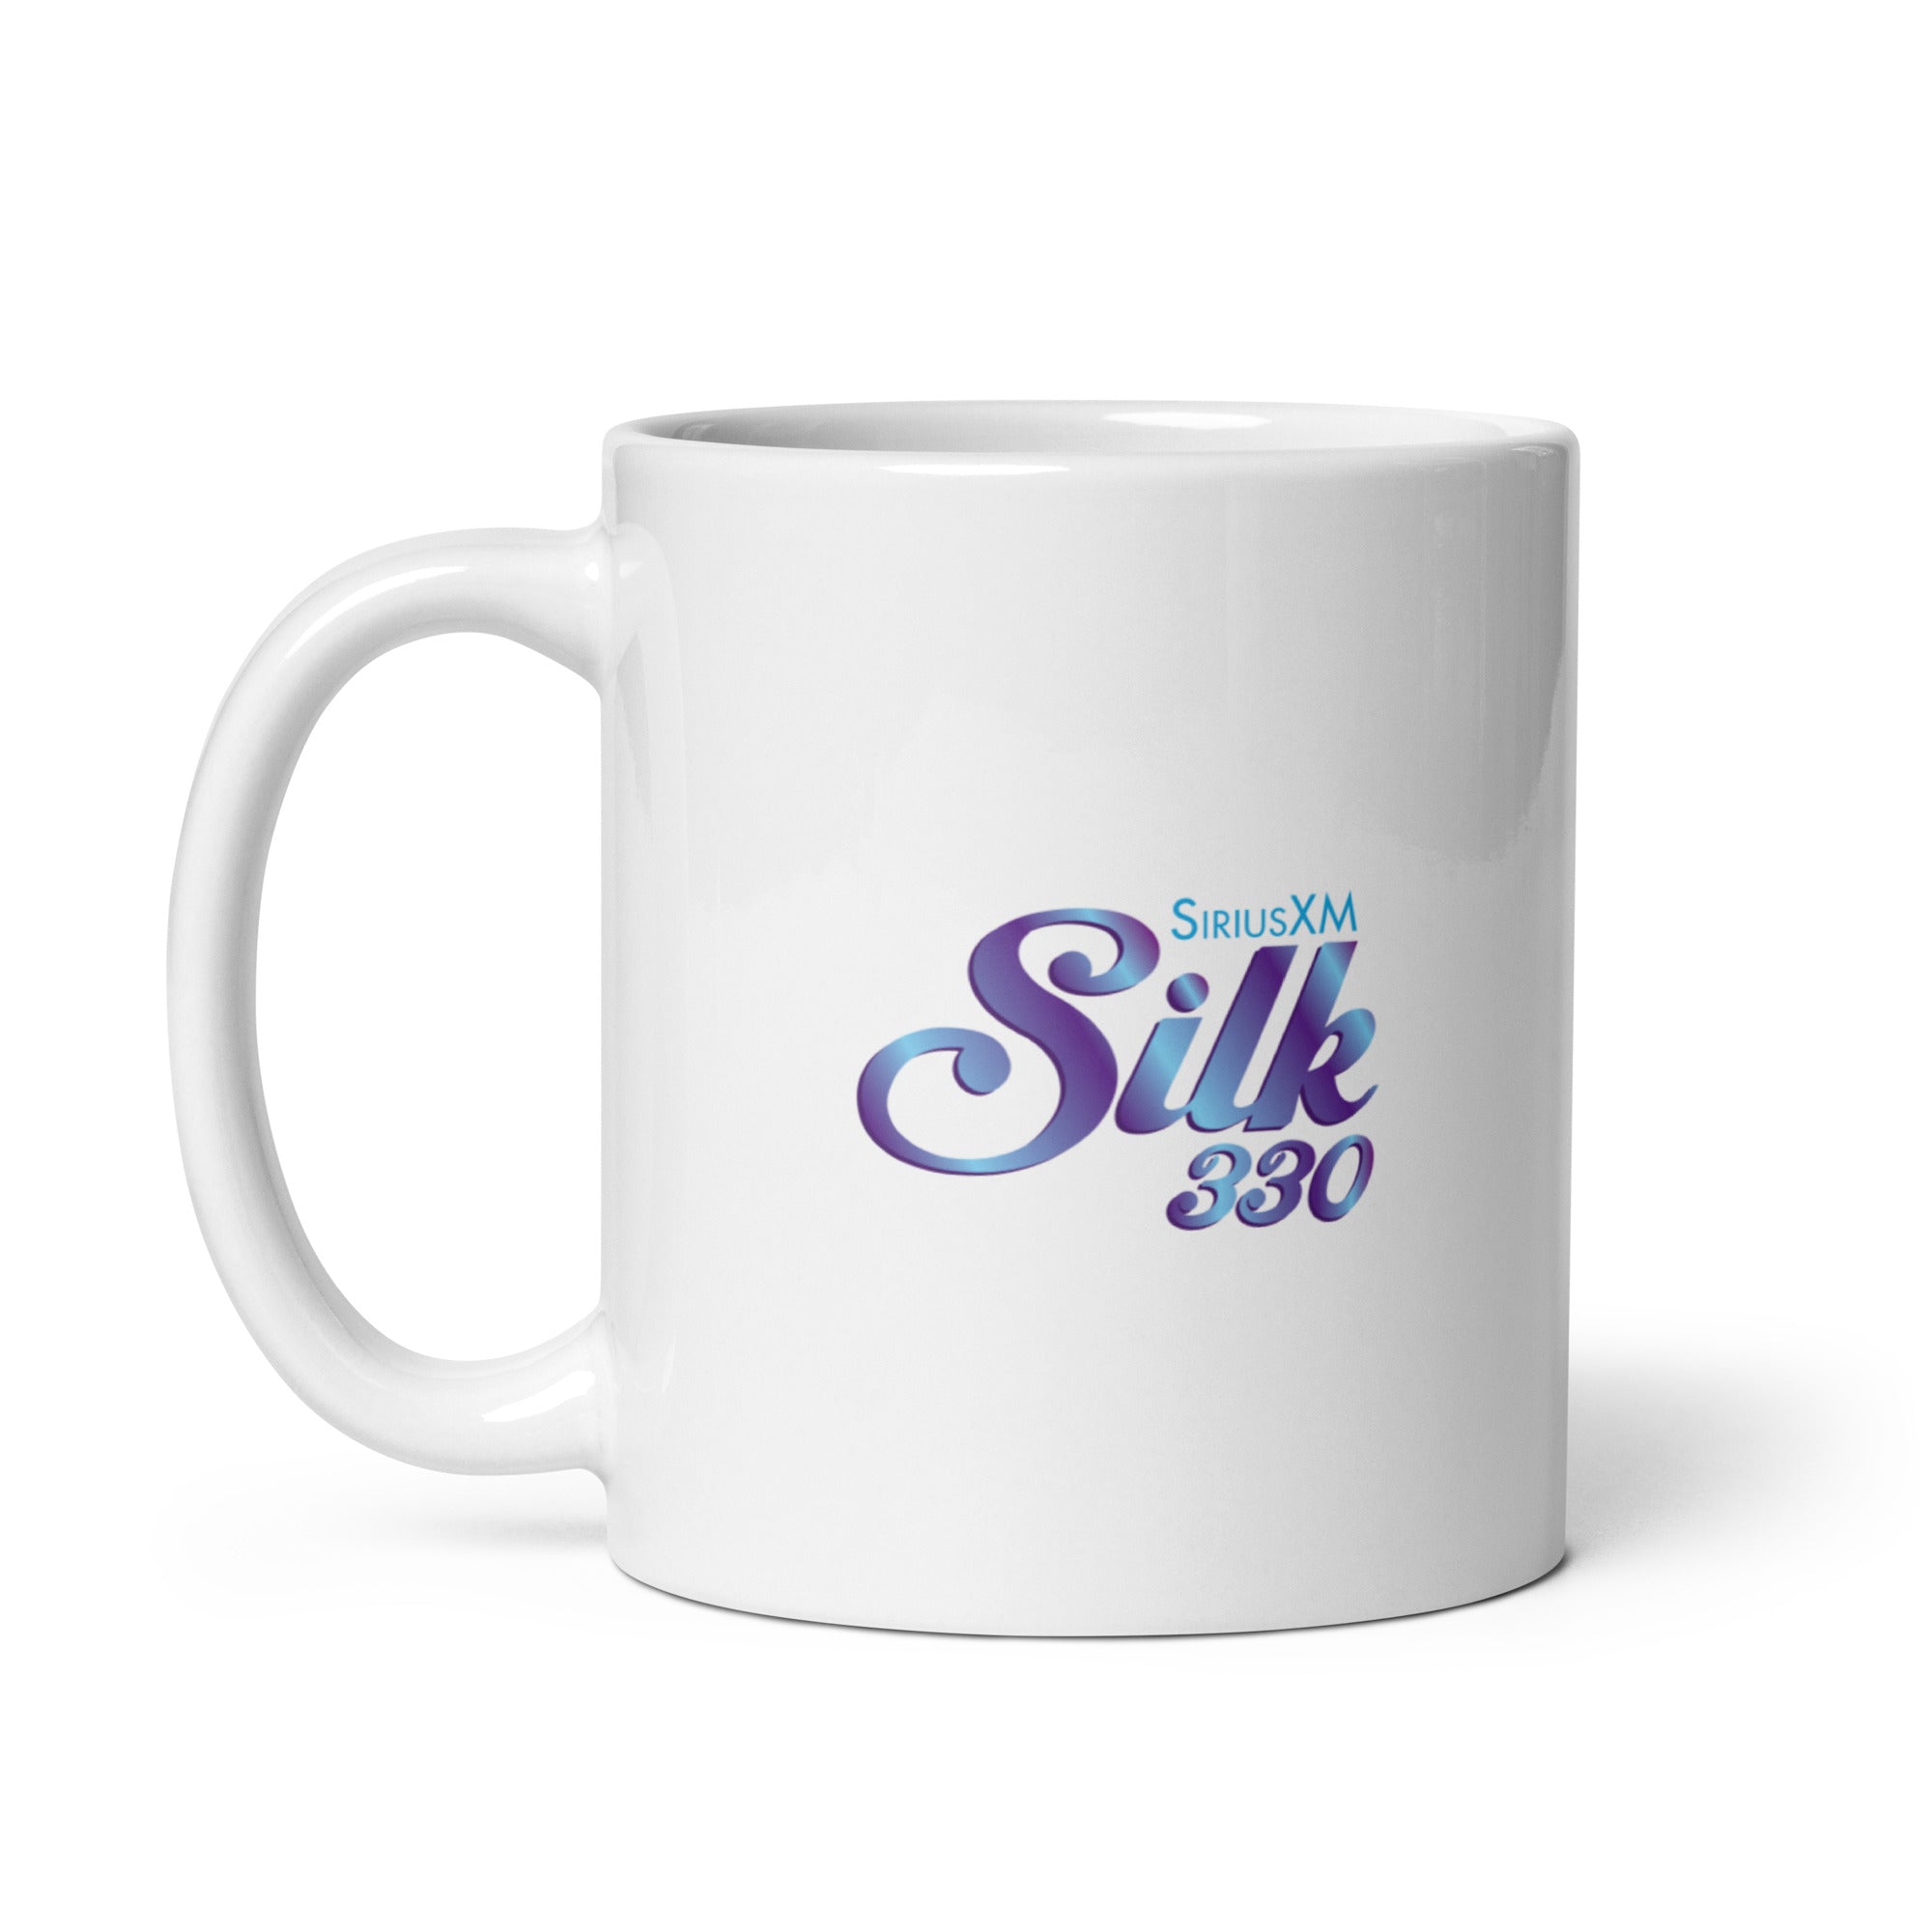 SiriusXM Silk: Mug